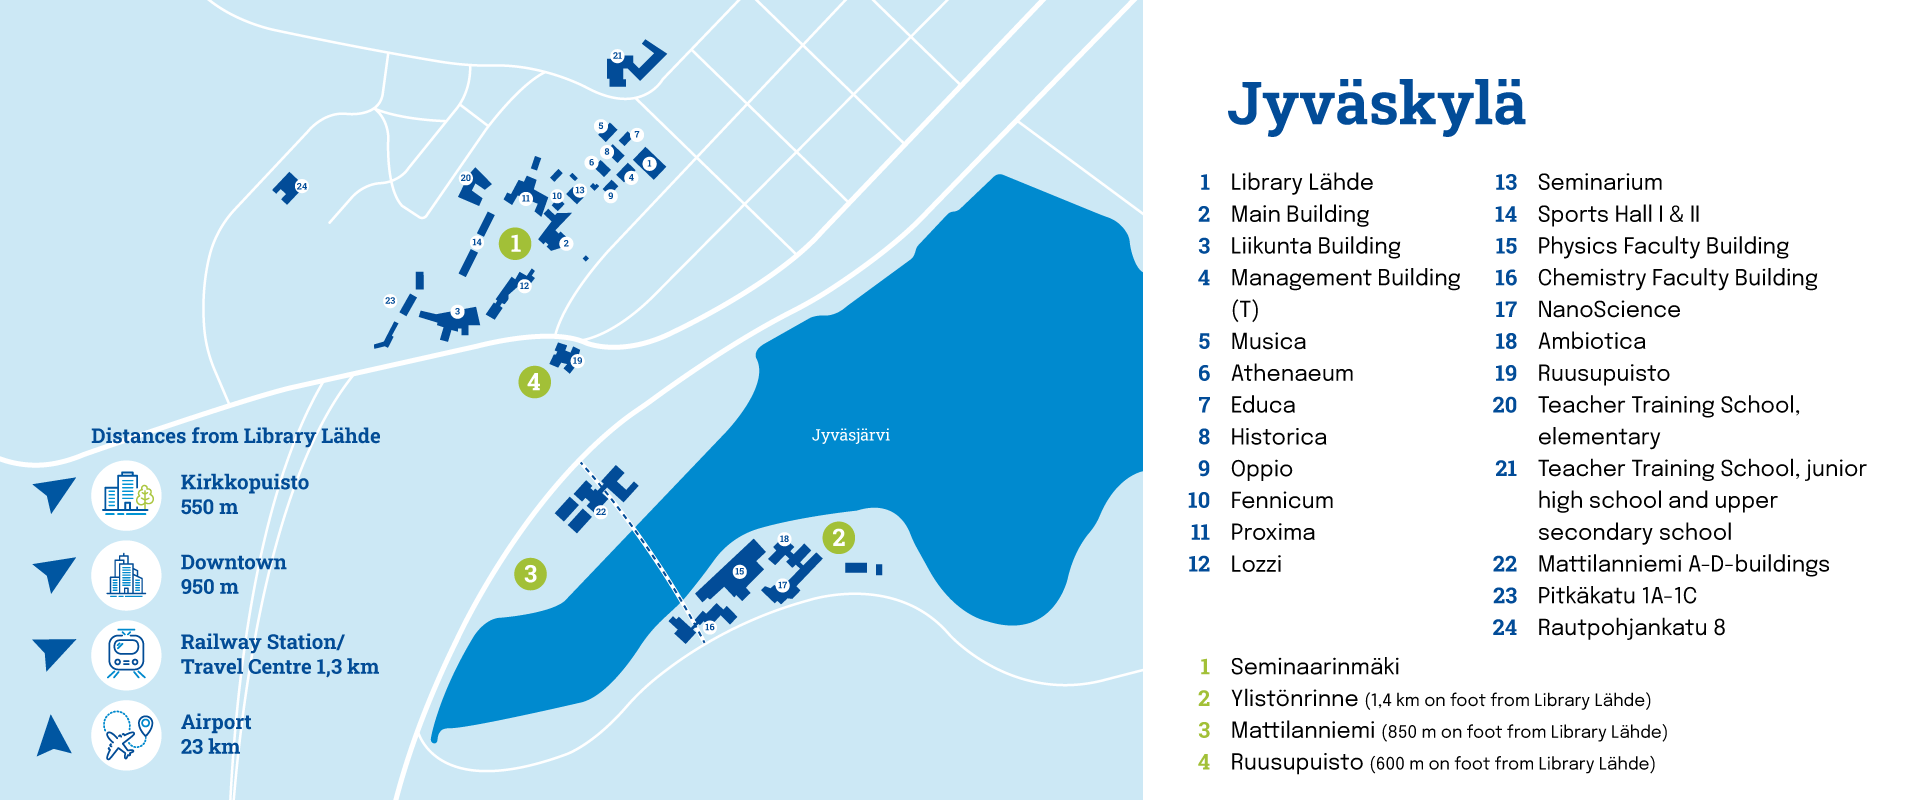 map of Jyväskylä campus